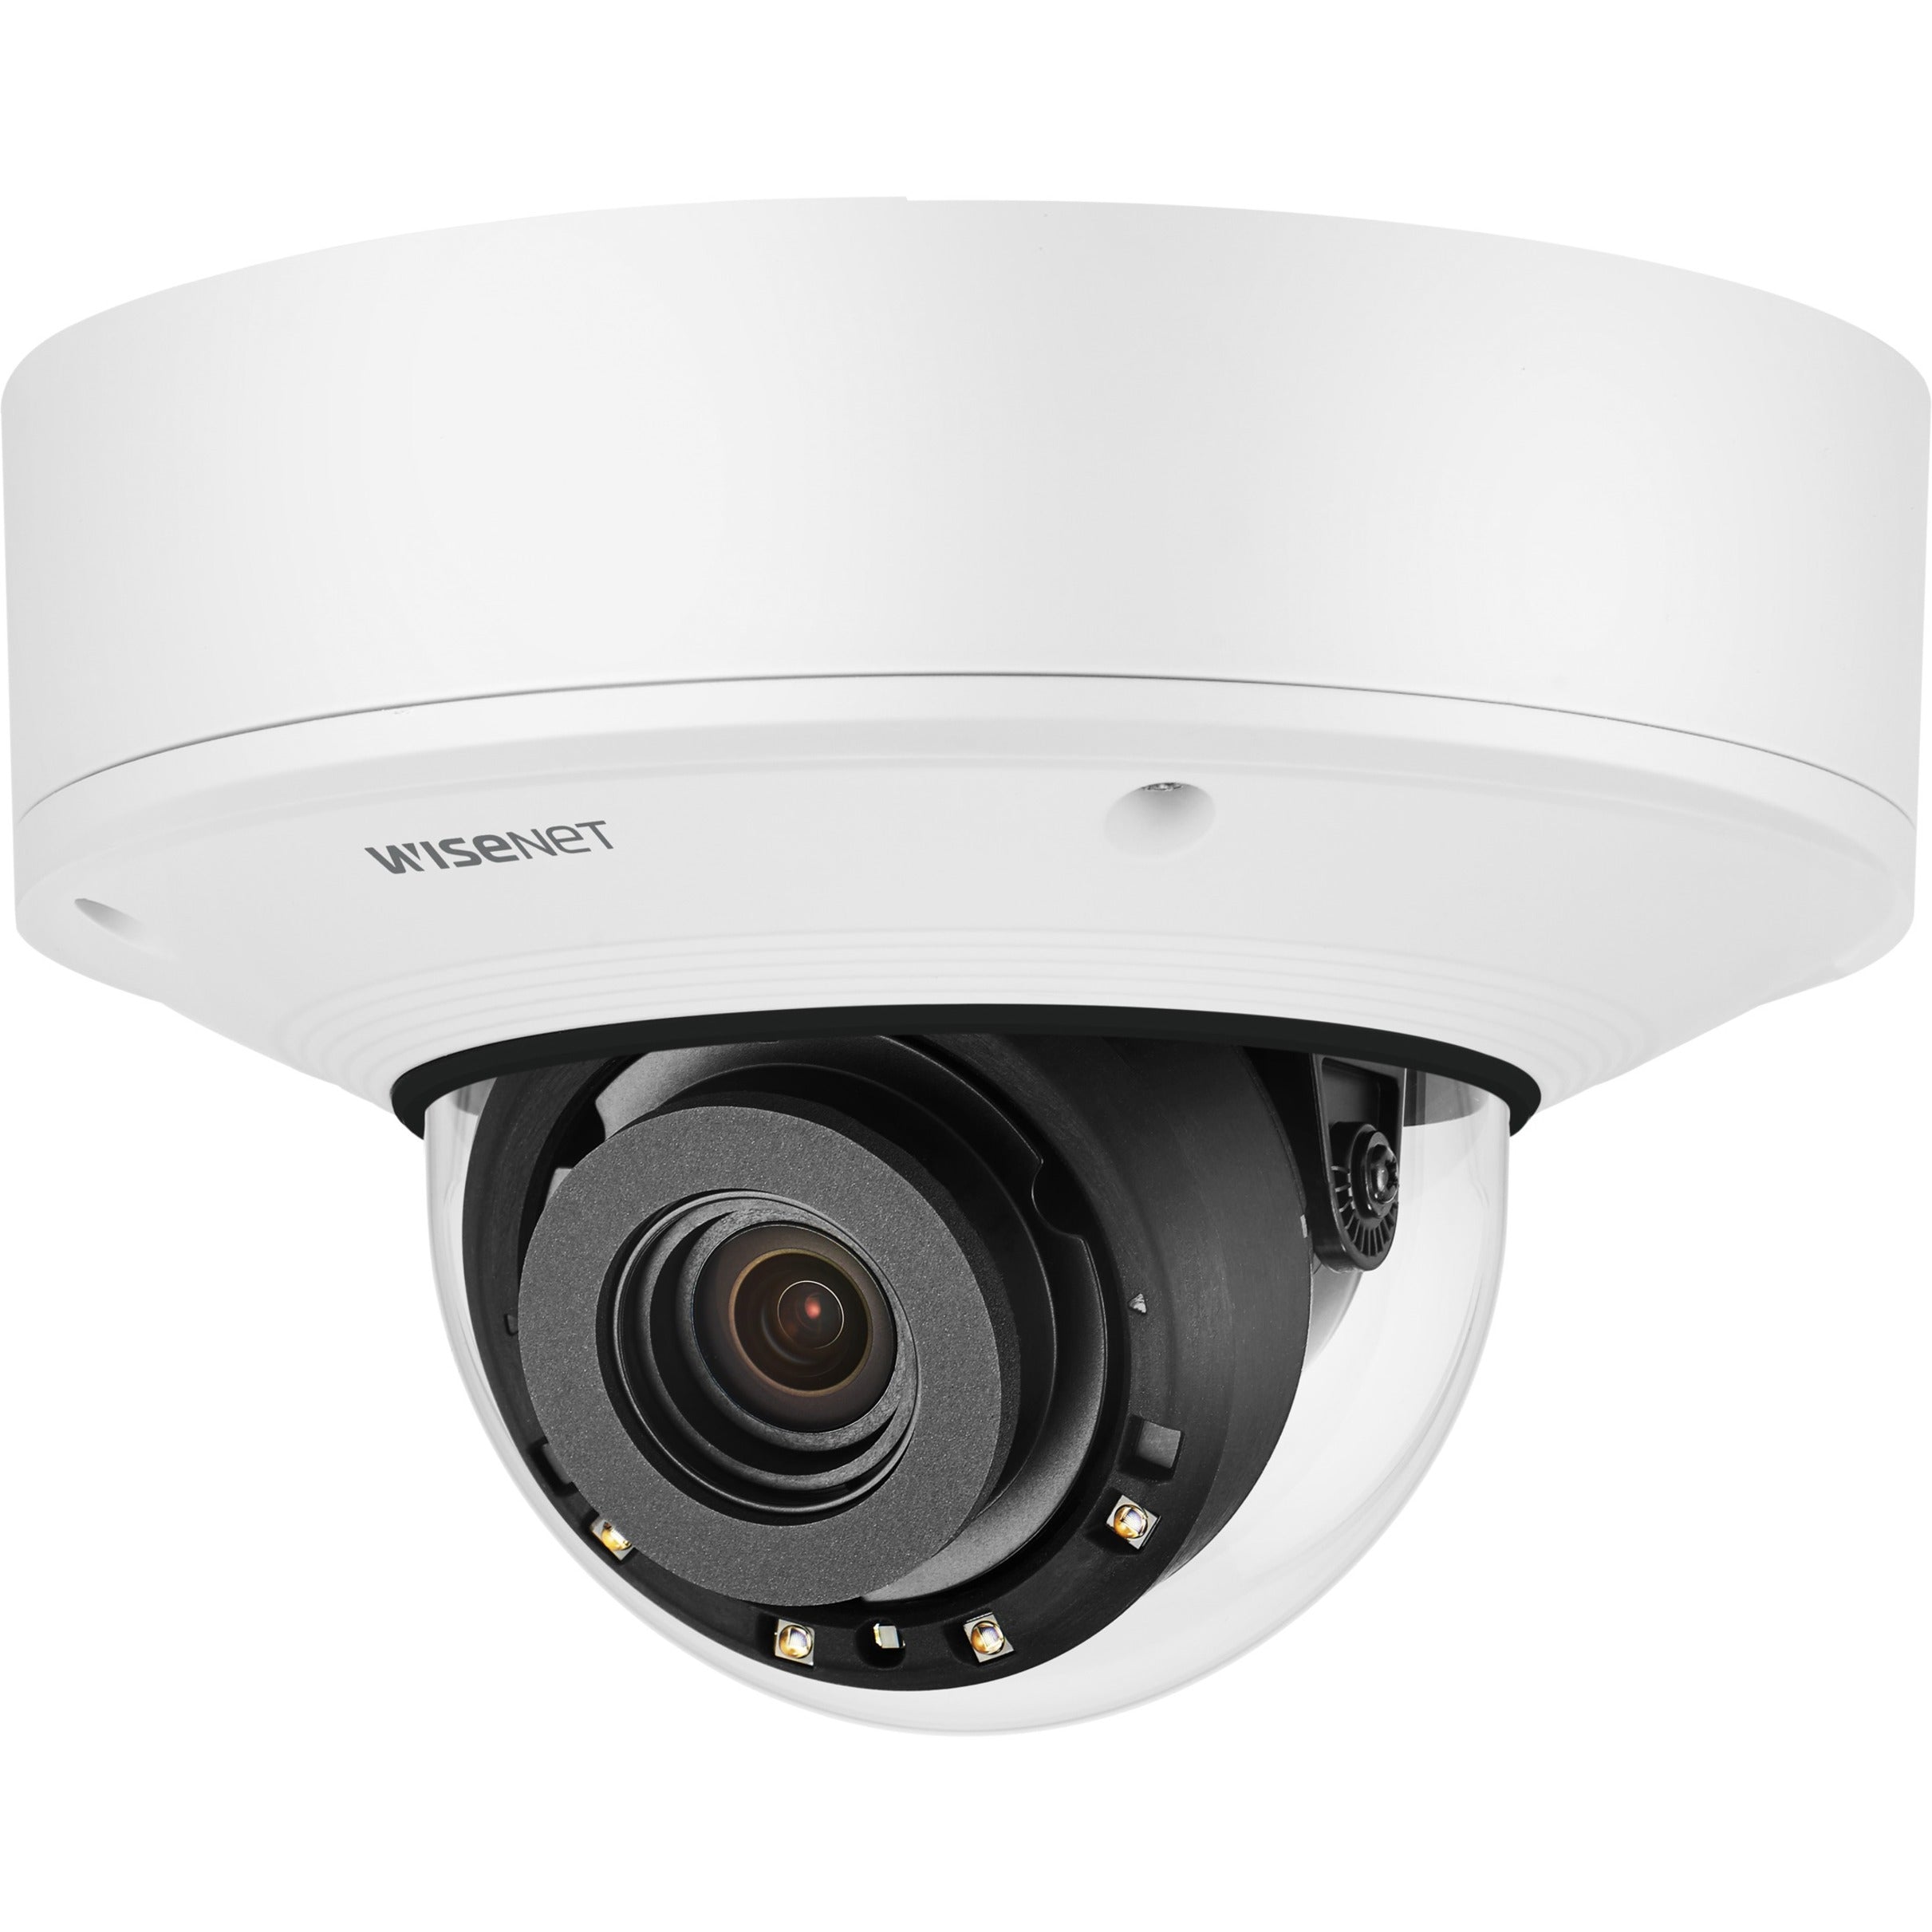 Wisenet XNV-8082R 6MP Netzwerk-IR-Vandalendomkamera Innen-/Außenüberwachung mit variofokalem Objektiv 3-fach optischem Zoom H.265 Videoformat 30fps Bildrate